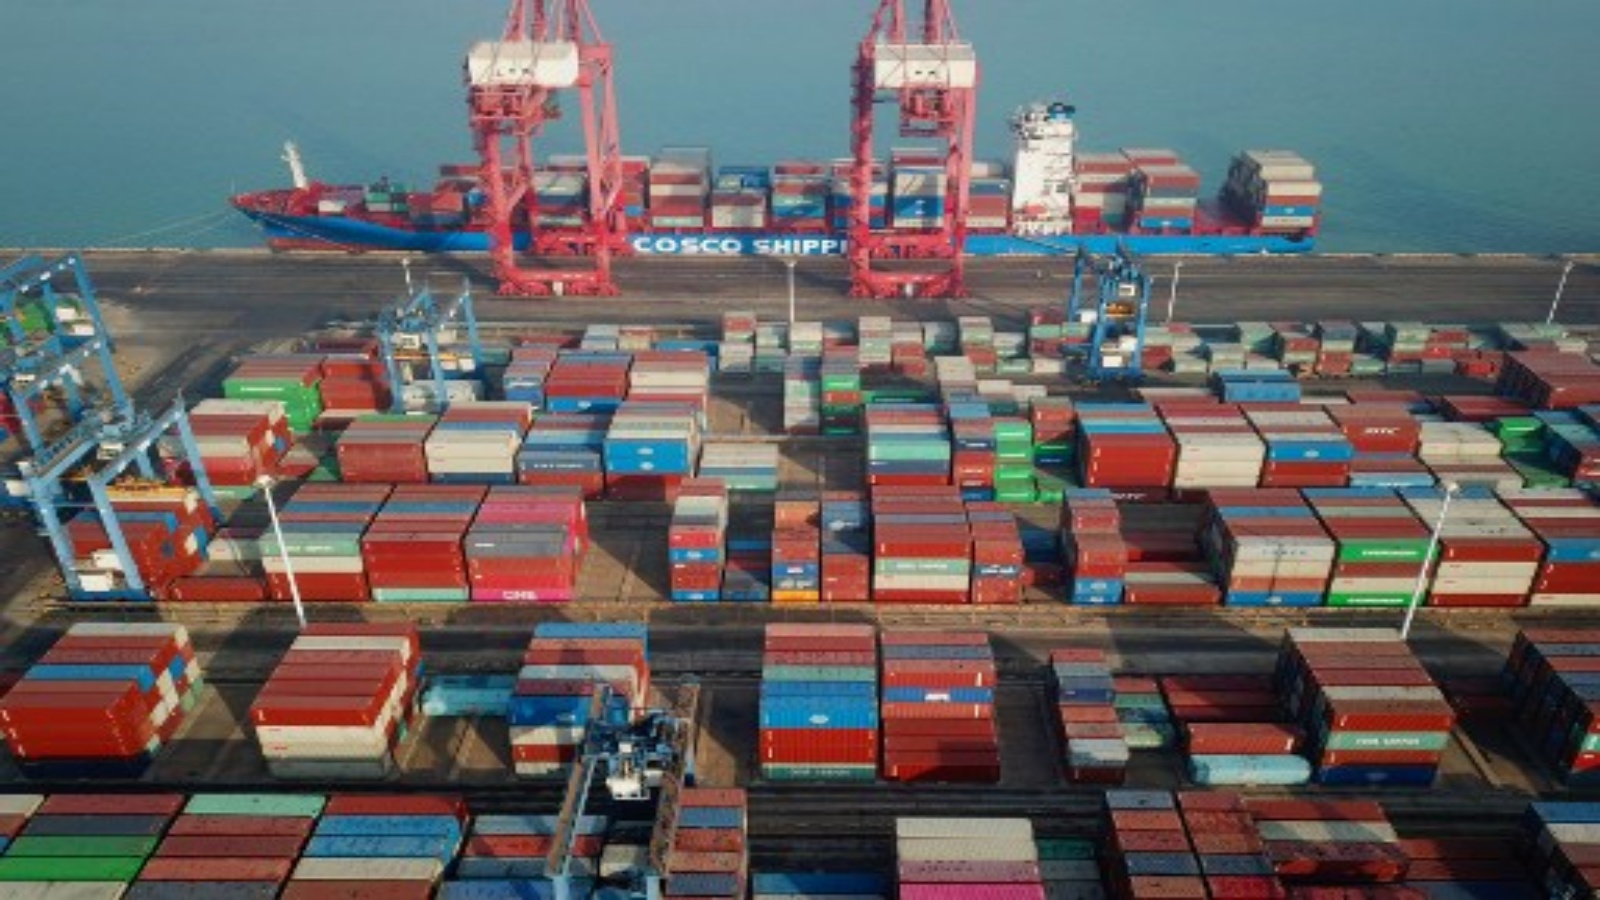 صورة جوية لحاويات شحن مكدسة في ميناء في ليانيونقانغ بمقاطعة جيانغسو شرقي الصين في 14 يناير 2021